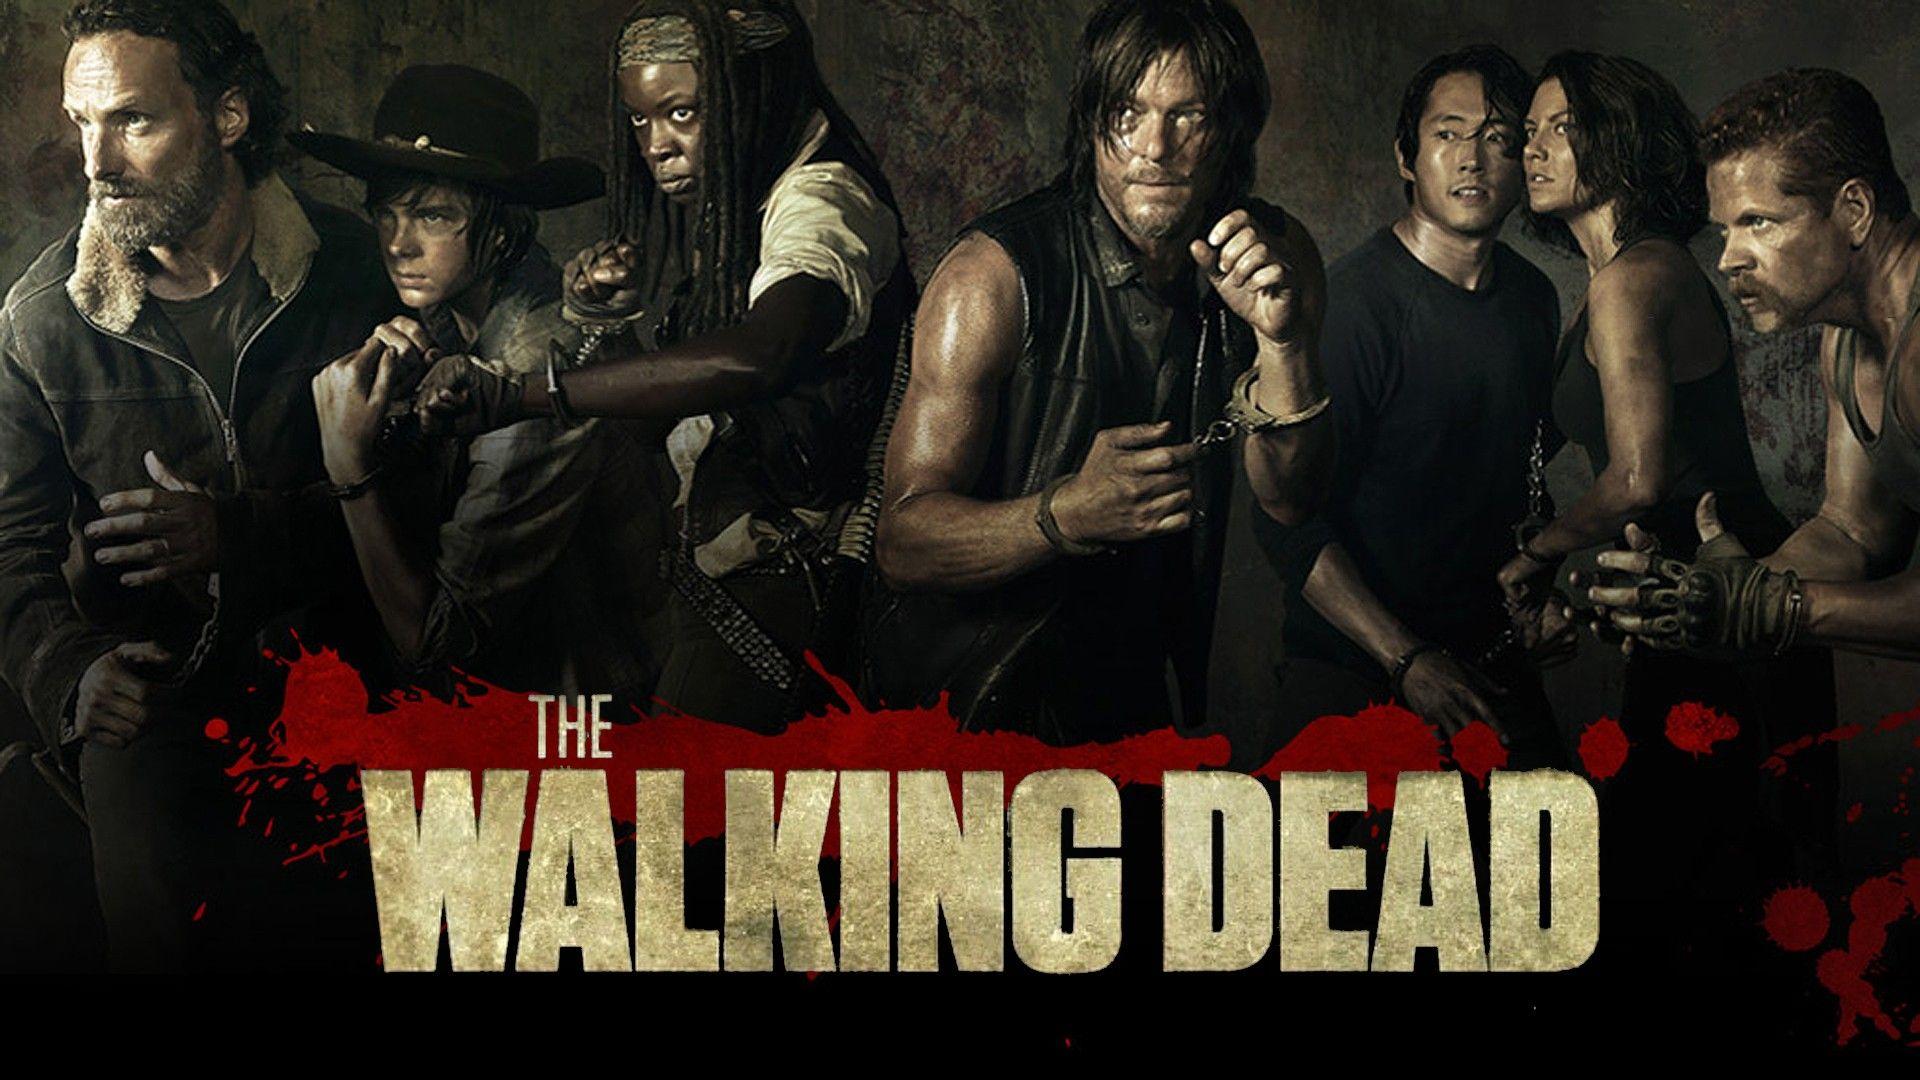 The Walking Dead S5